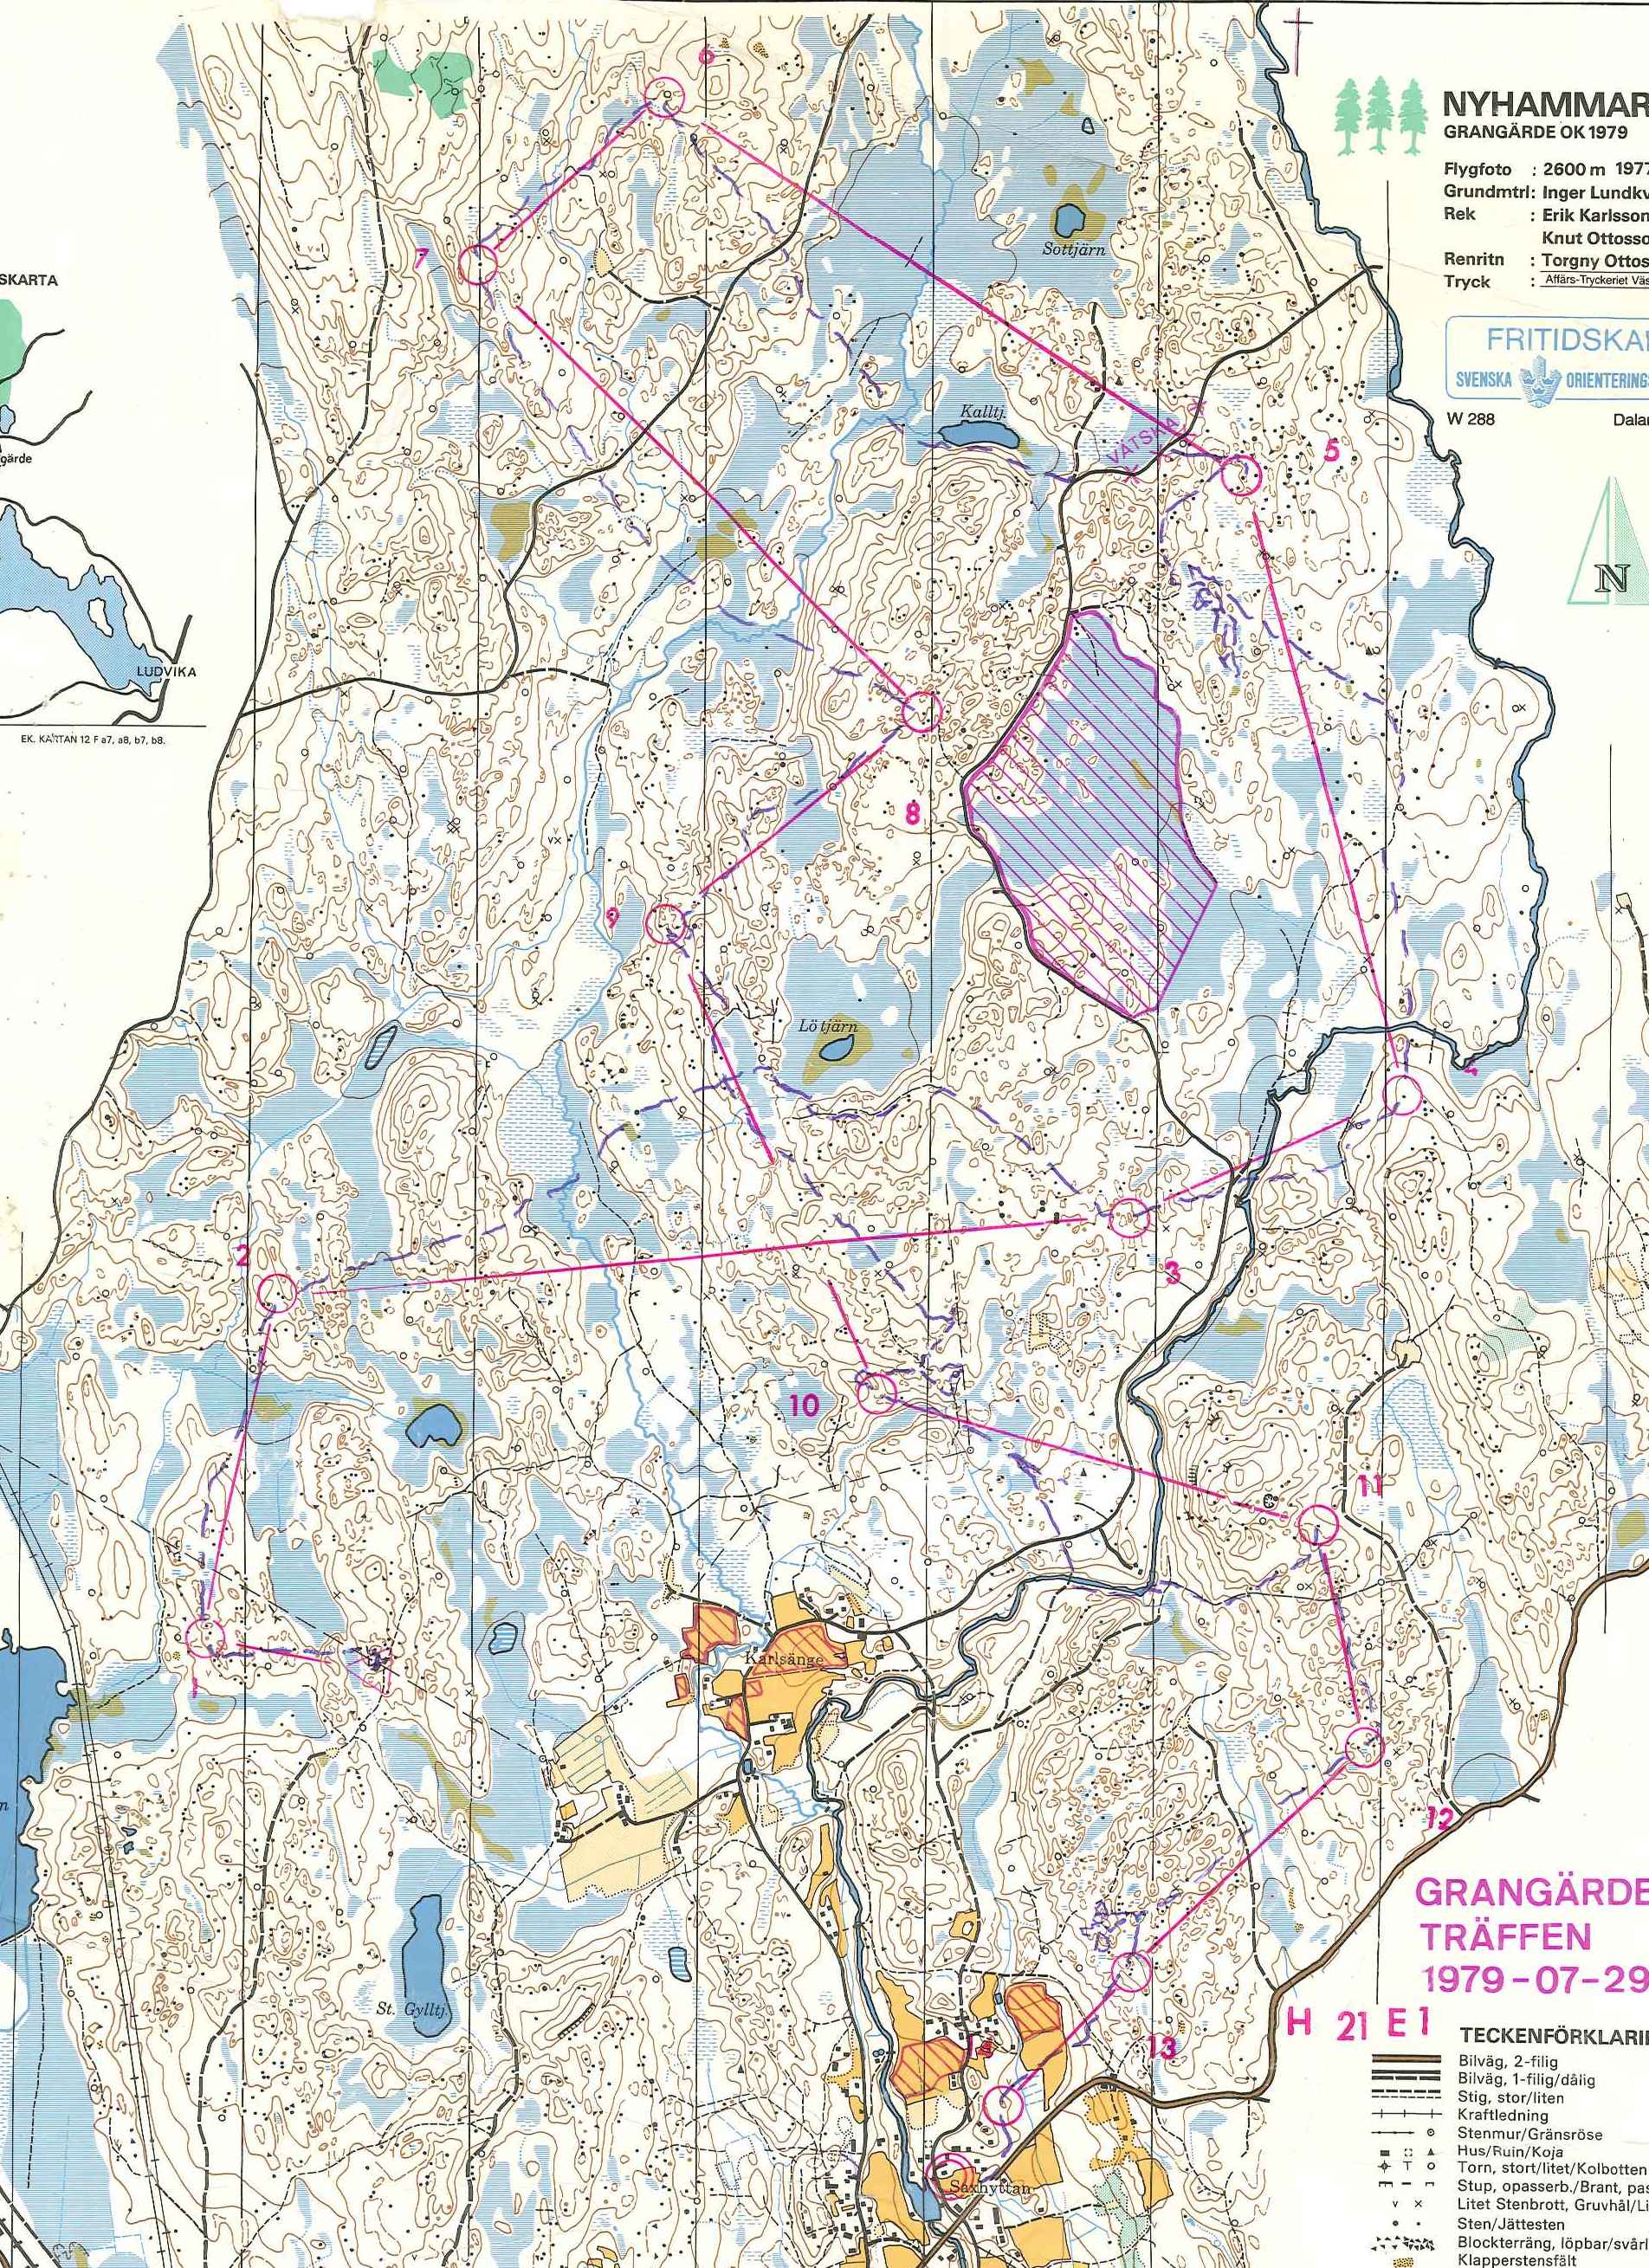 Grangärde (1979-07-29)